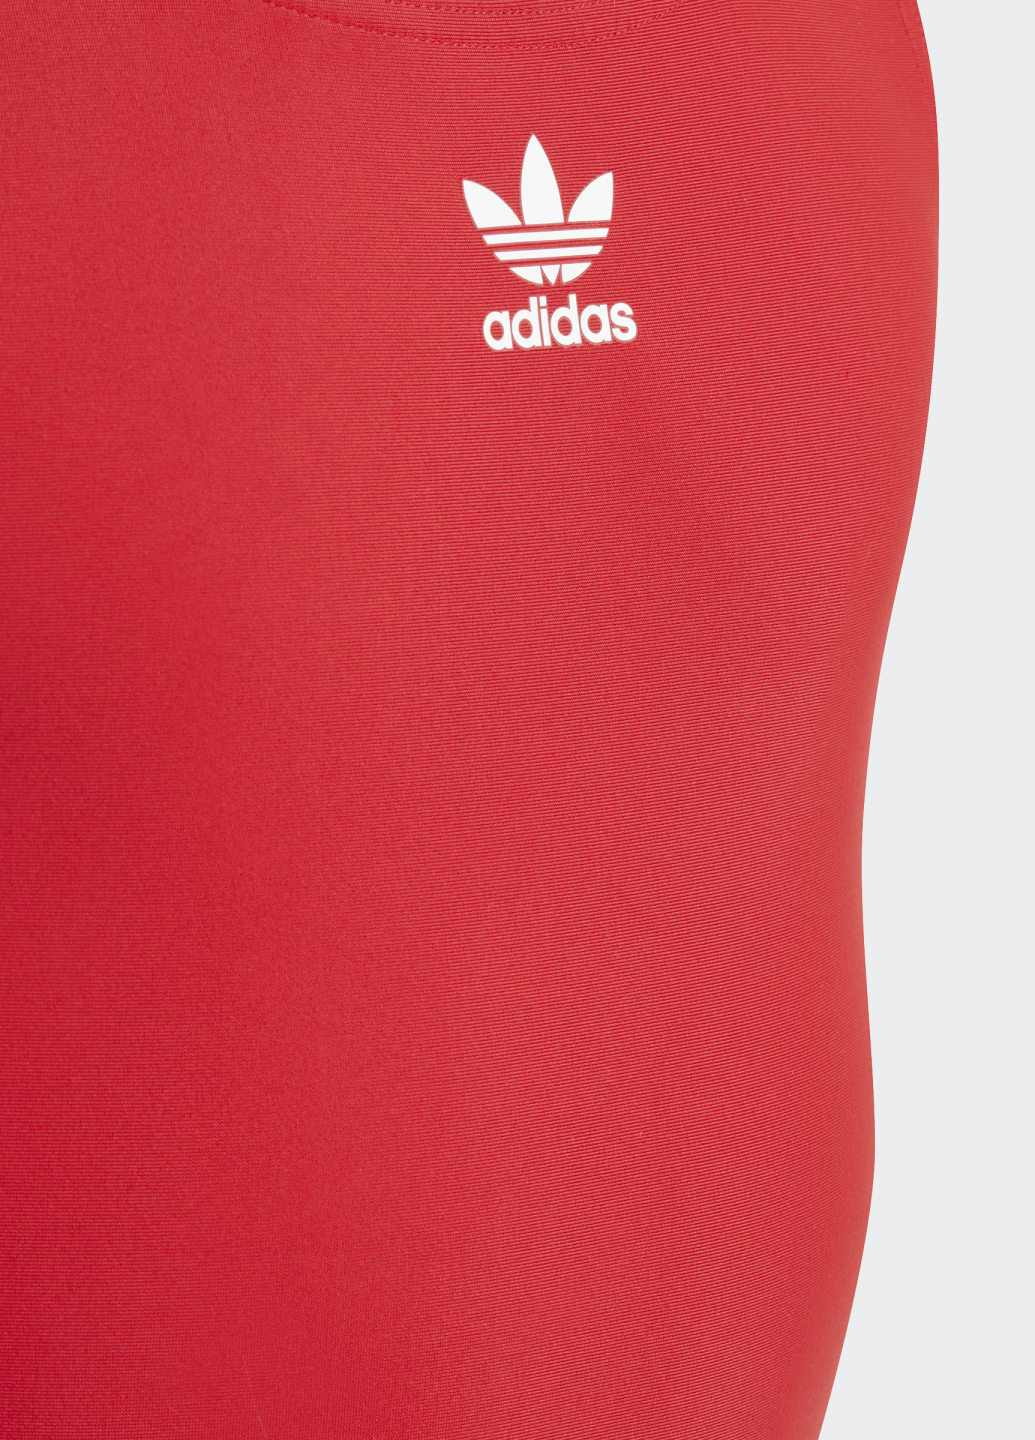 Красный летний слитный купальник originals adicolor 3-stripes adidas